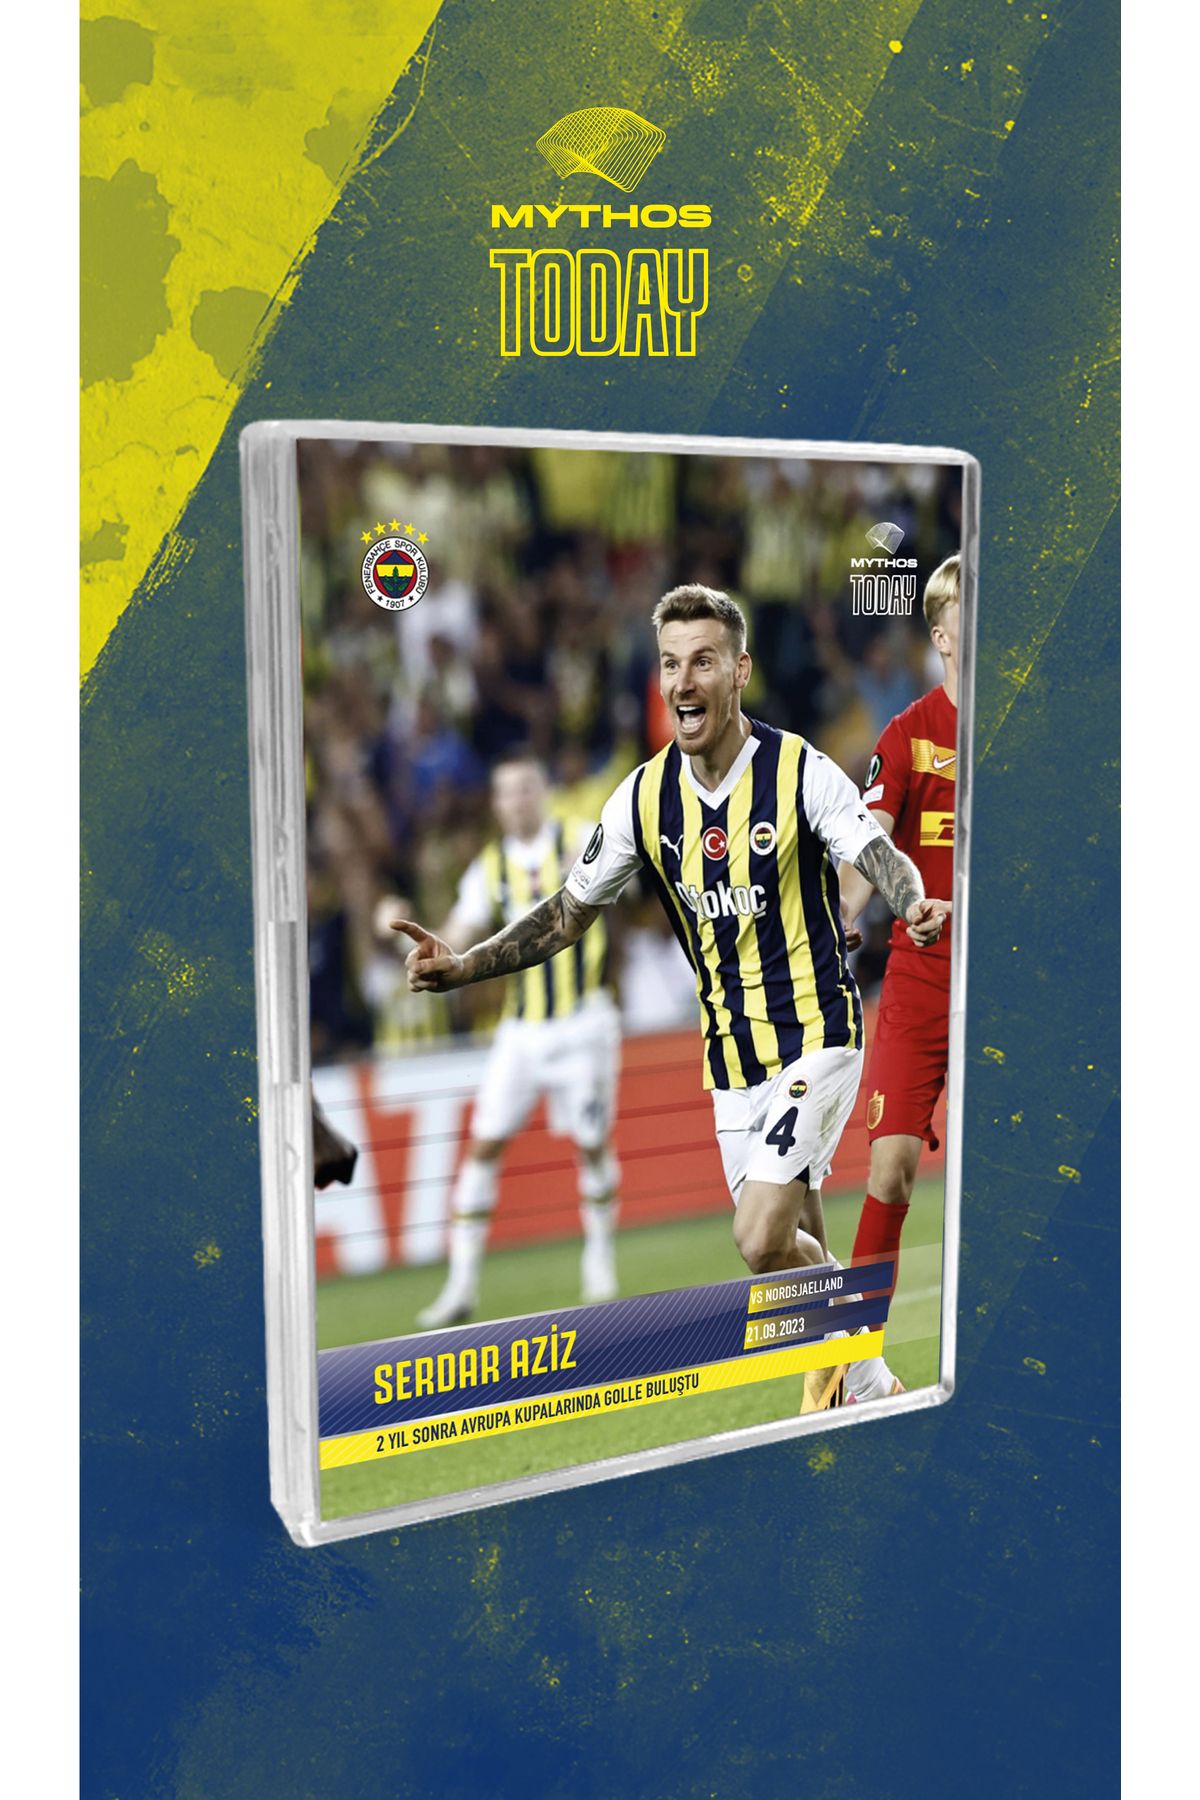 Fenerbahçe SERDAR AZİZ / 12 Yıl Sonra Avrupa Kupalarında Golle Buluştu